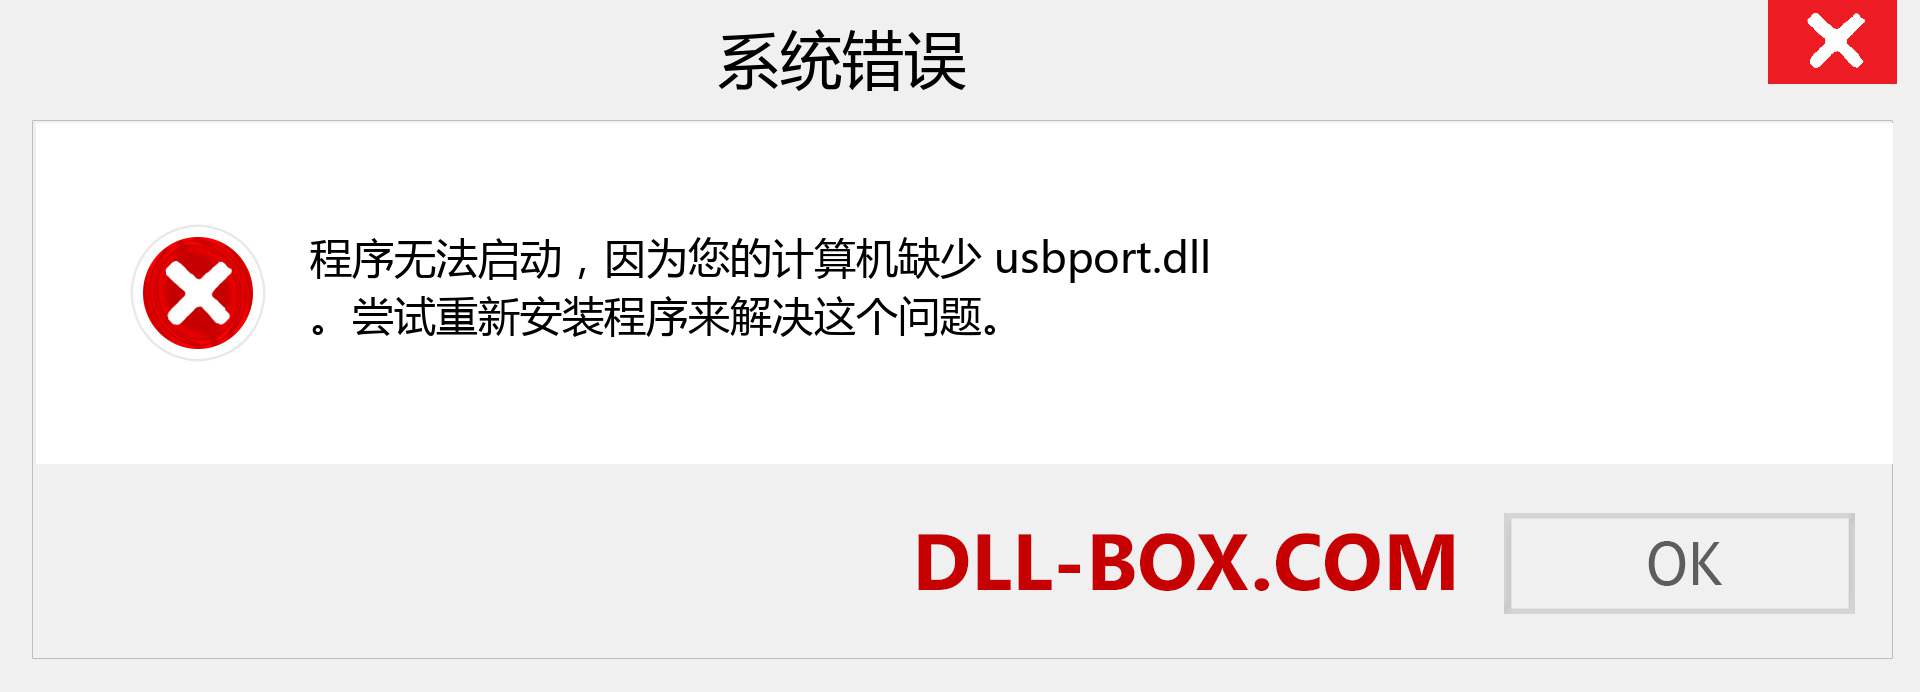 usbport.dll 文件丢失？。 适用于 Windows 7、8、10 的下载 - 修复 Windows、照片、图像上的 usbport dll 丢失错误